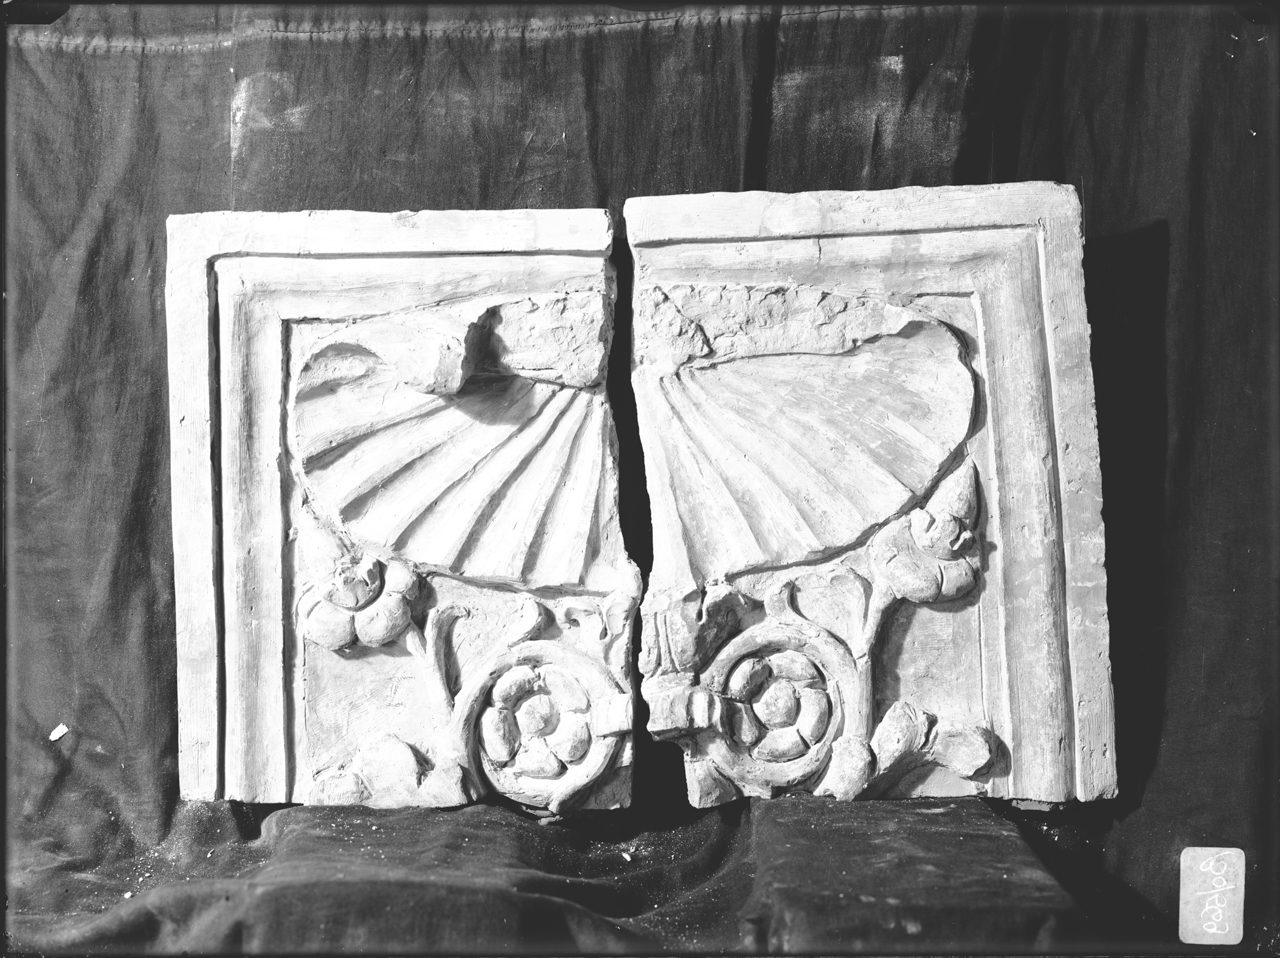 Elementi architettonici in terracotta – Lesene - Fregi (negativo, insieme) di A. Villani & Figli (ditta), Savelli, Sperandio (secondo quarto XX)